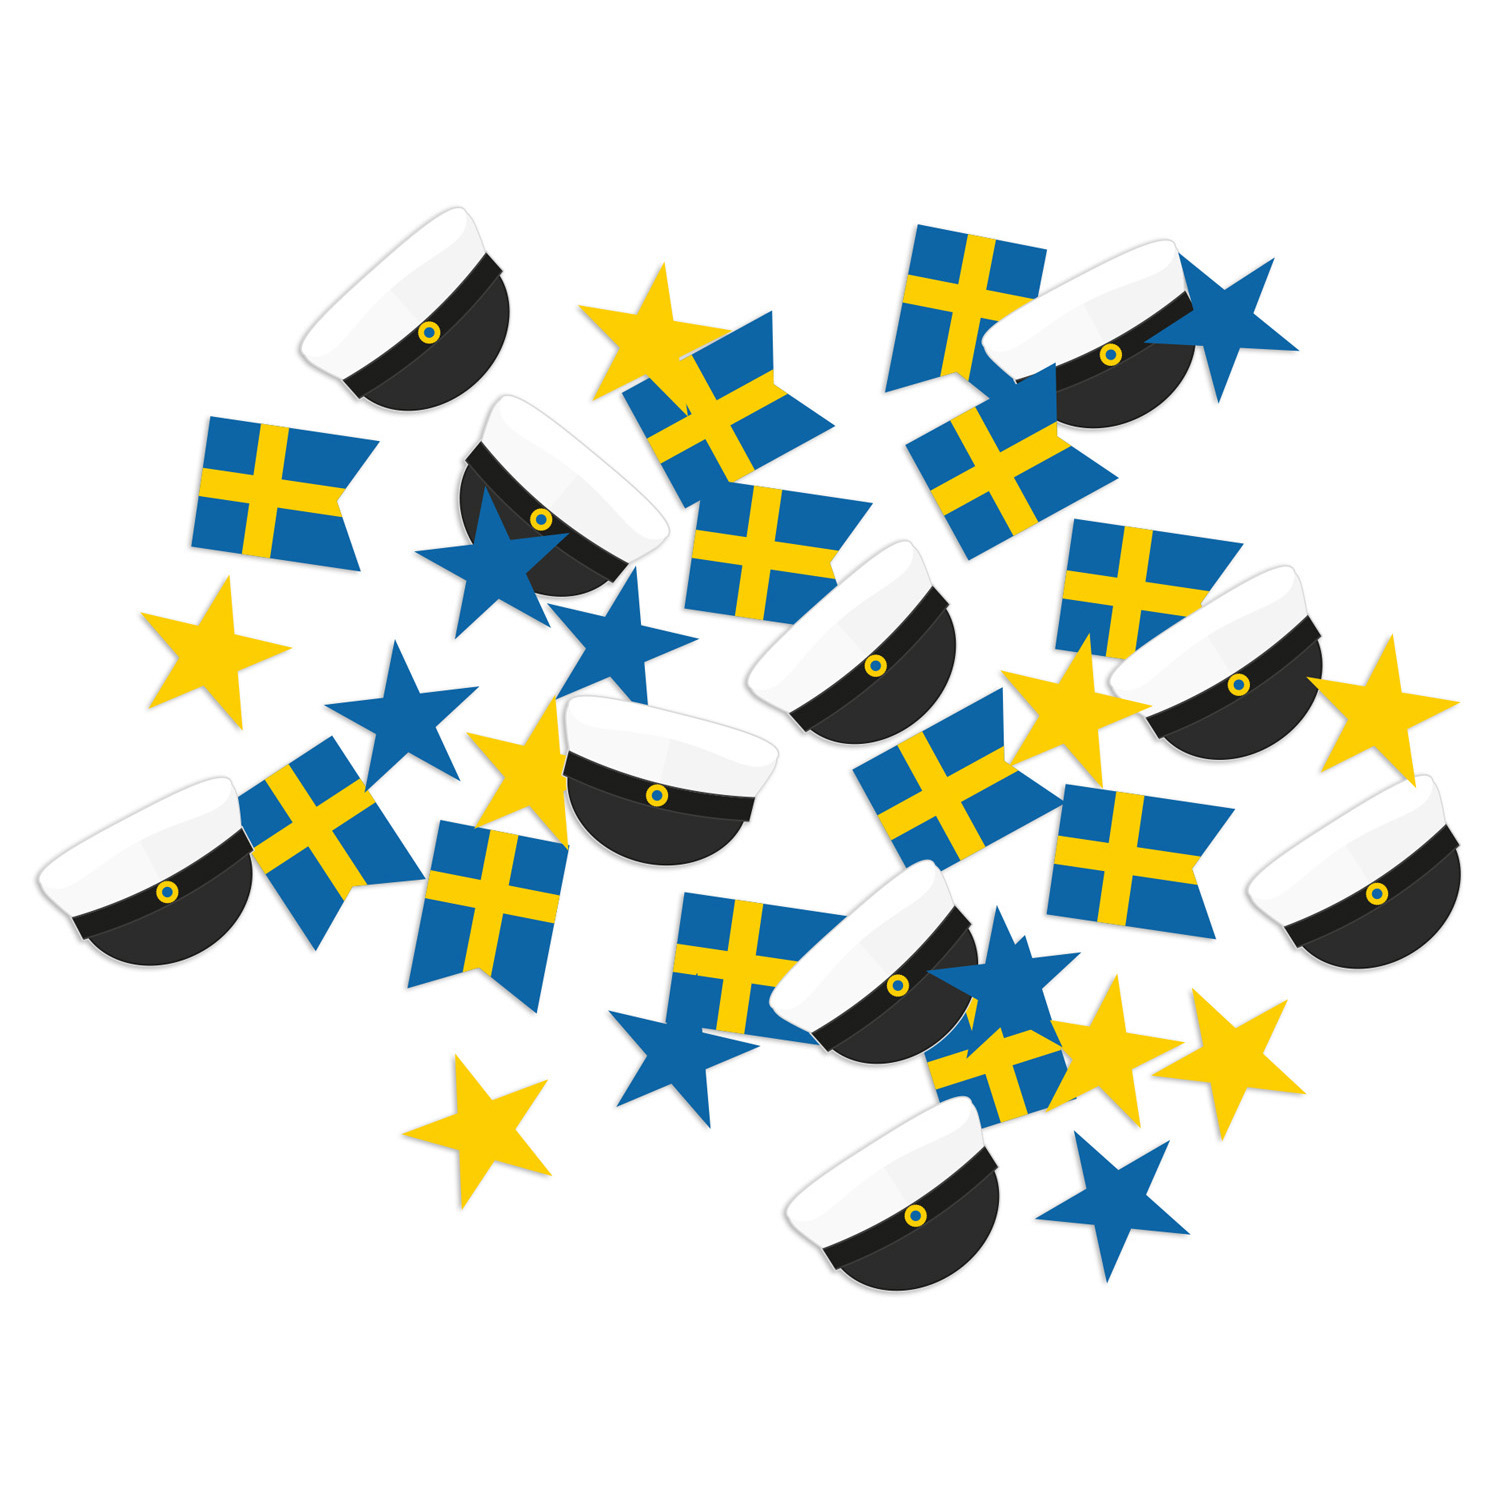 Papperskonfetti med studentmössor, svenska flaggor och gula stjärnor